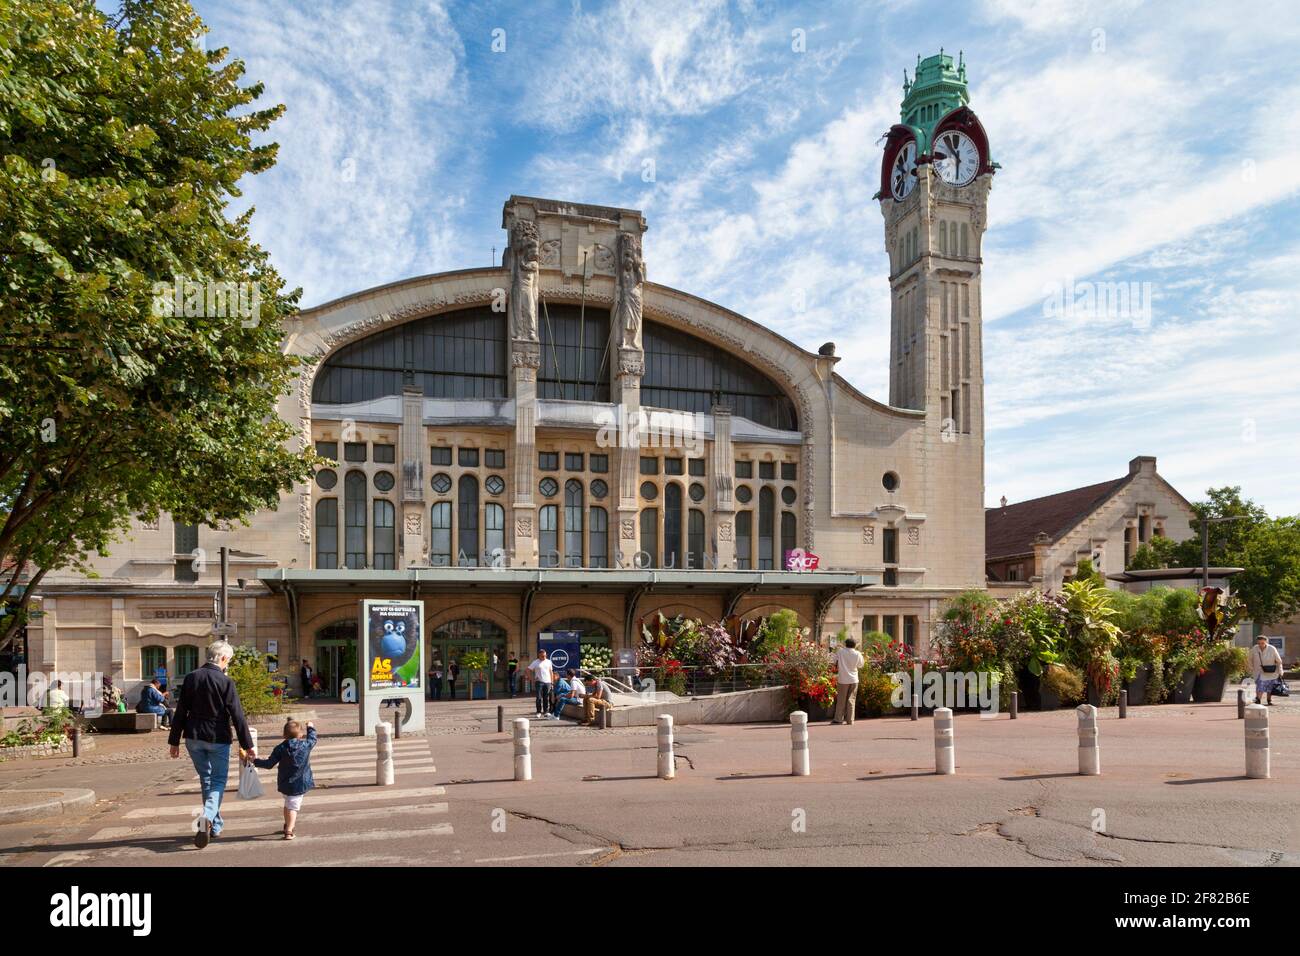 Rouen, France - juillet 21 2017 : Rouen-Rive-droite est une grande gare construite en 1847 dans la ville de Rouen, en Normandie. Banque D'Images